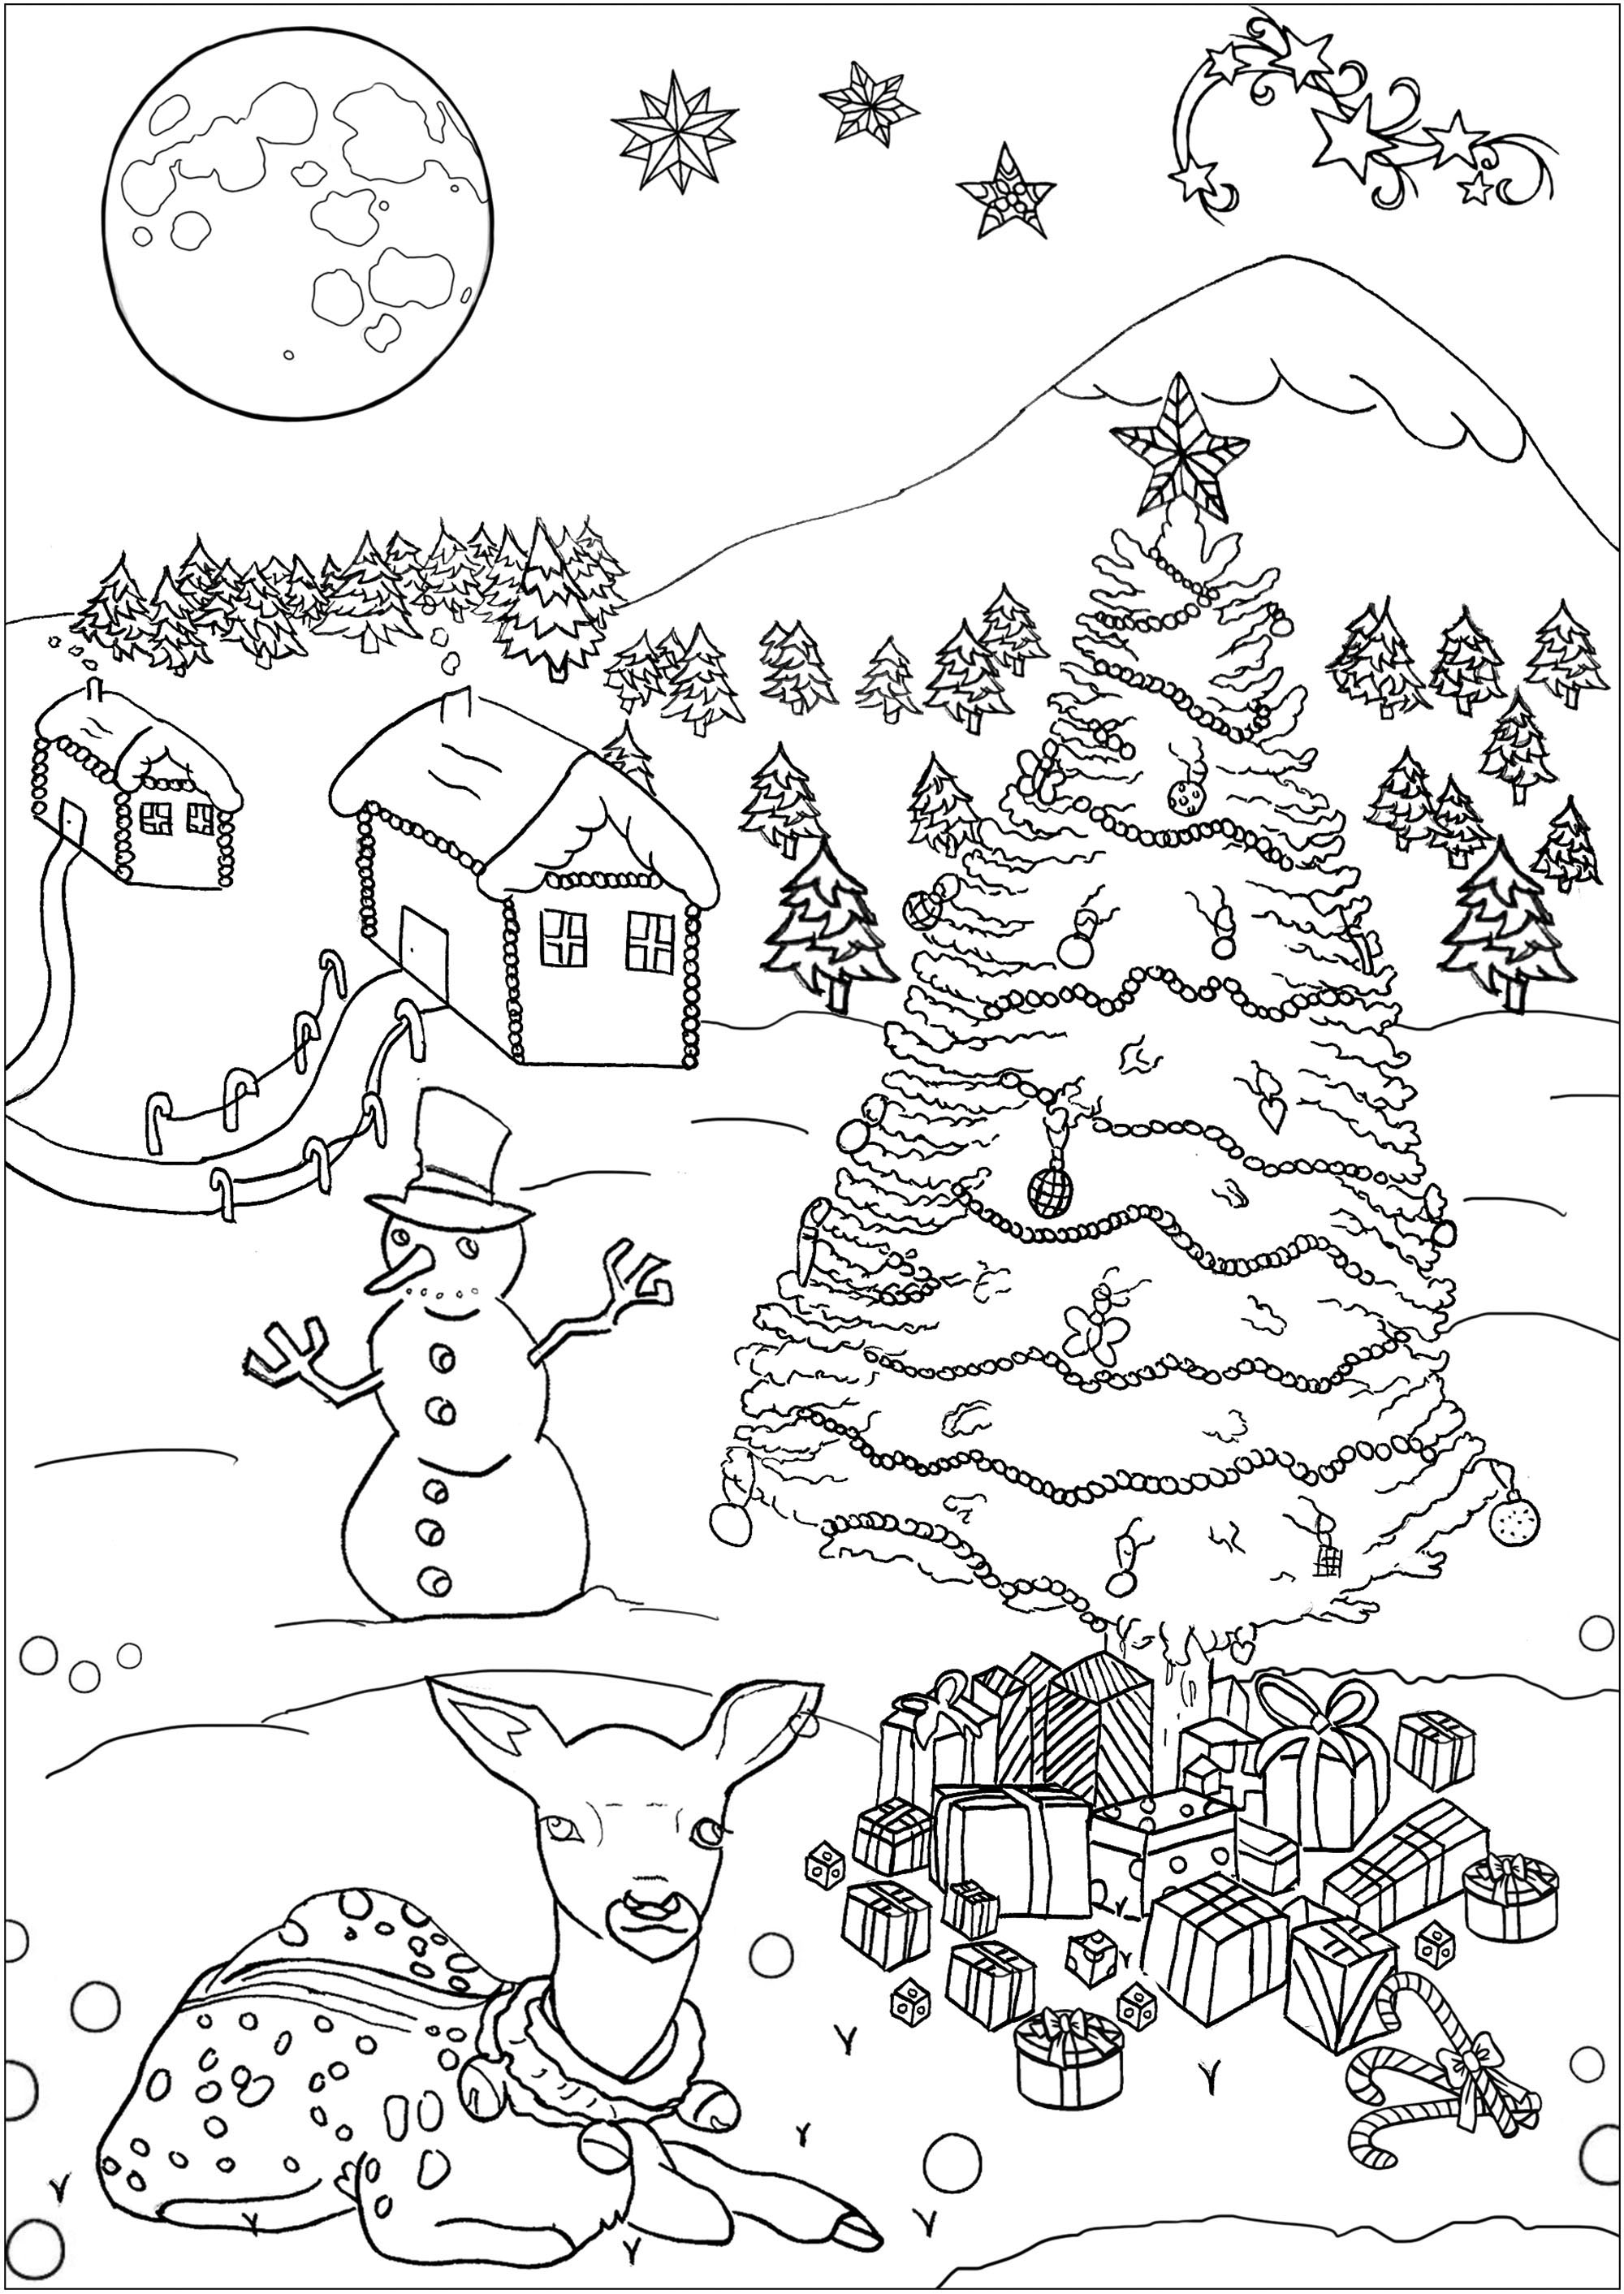 Un sympathique bonhomme de neige, une biche, un sapin ... tout pour passer un bon Noël, Artiste : Gamma